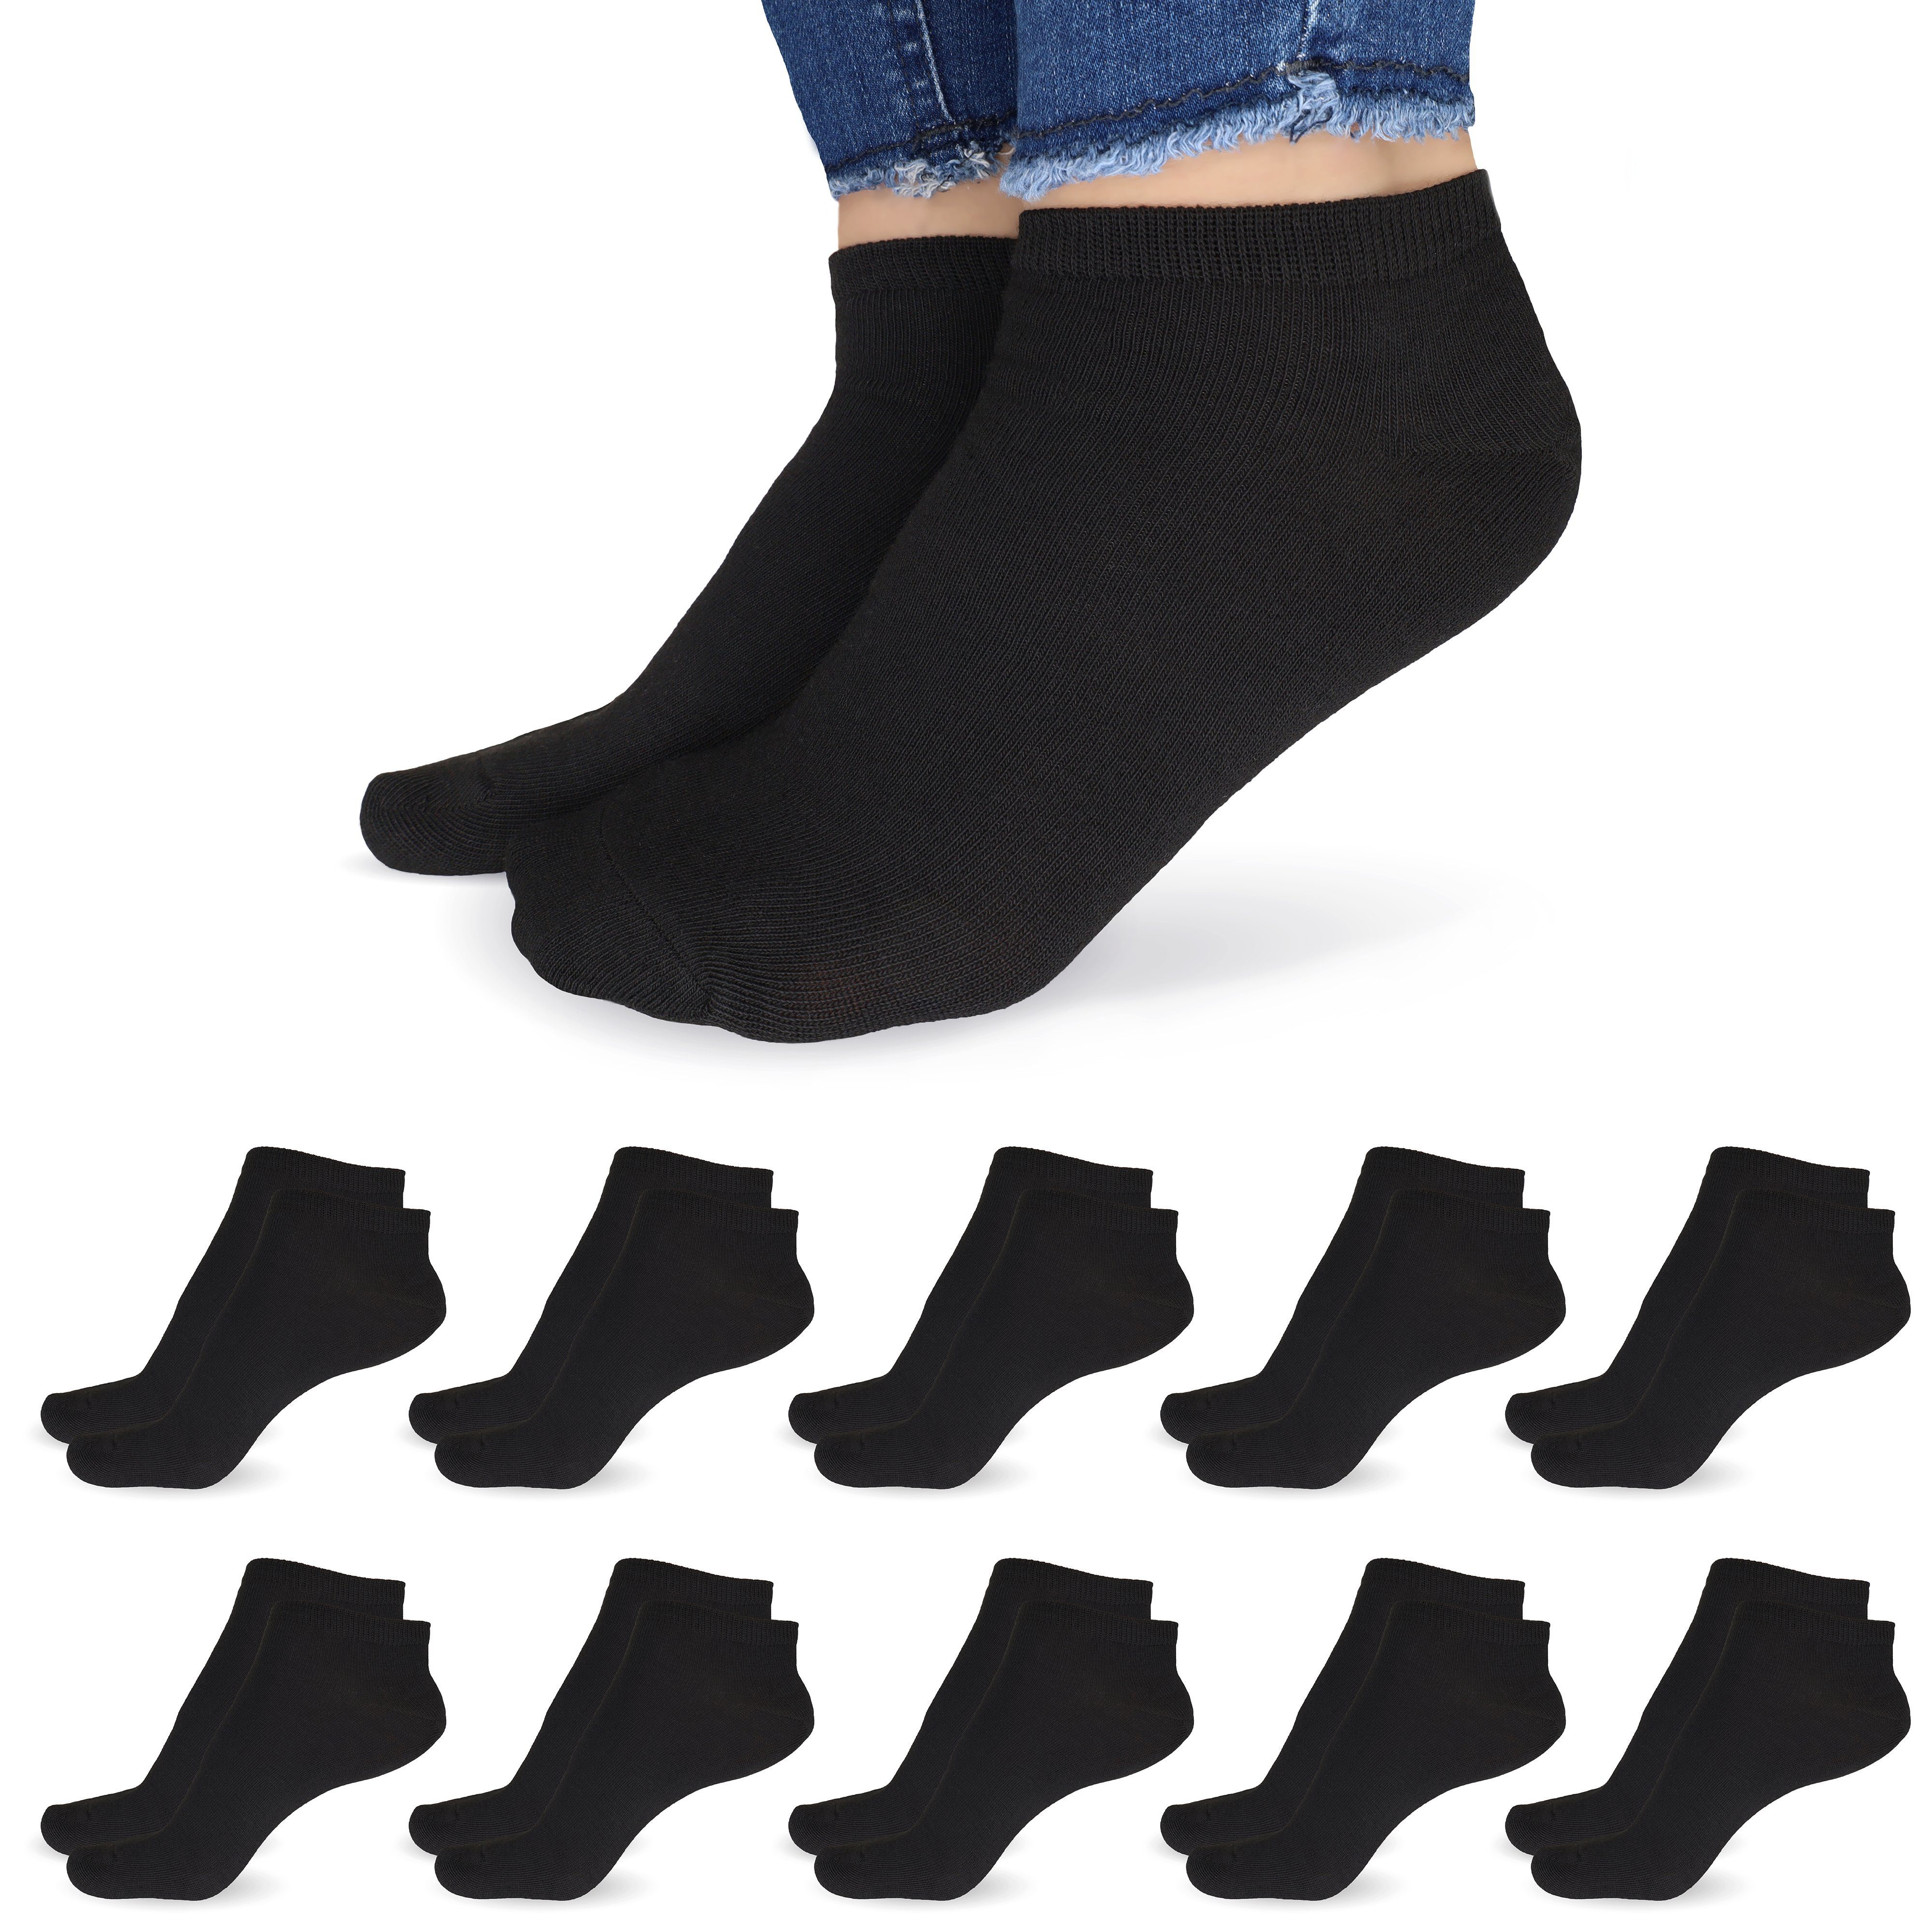 SO.I Freizeitsocken Sneaker Socken Damen & Herren aus Baumwolle (Größen 35-46, 5-20 Paar) atmungsaktive Unisex Socken 10x Schwarz | Socken